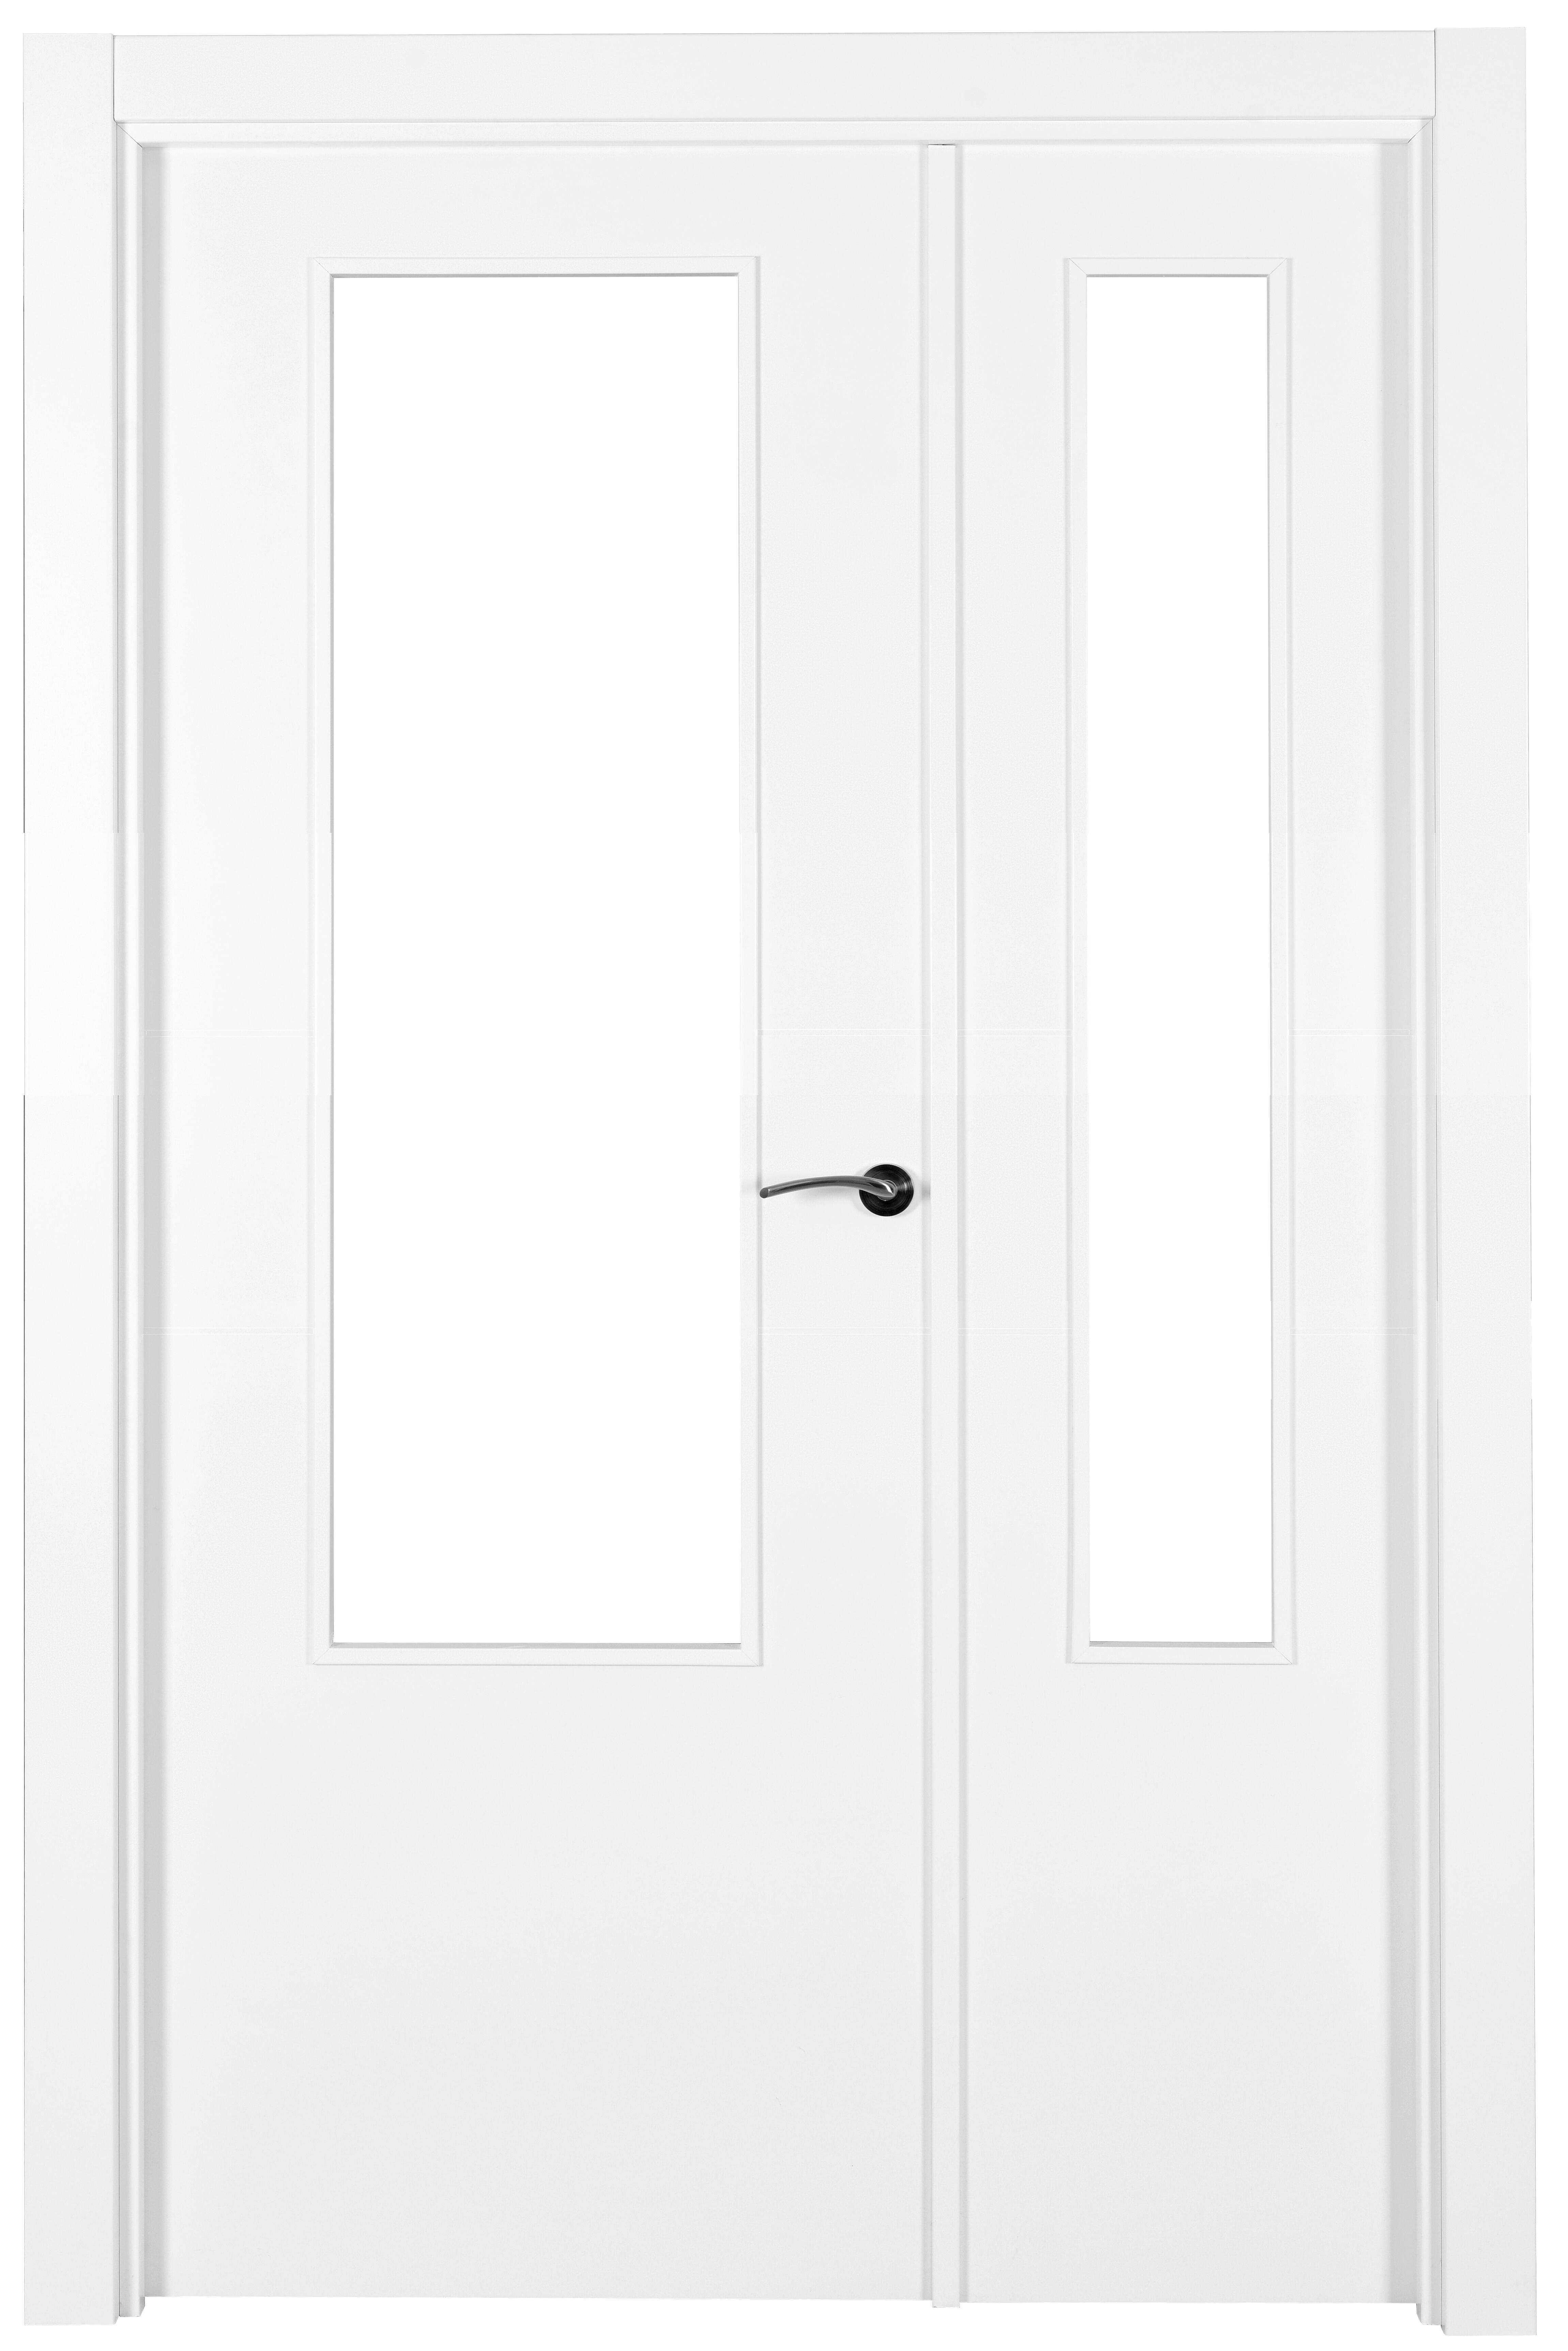 Puerta lyon blanco apertura izquierda con cristal 105cm